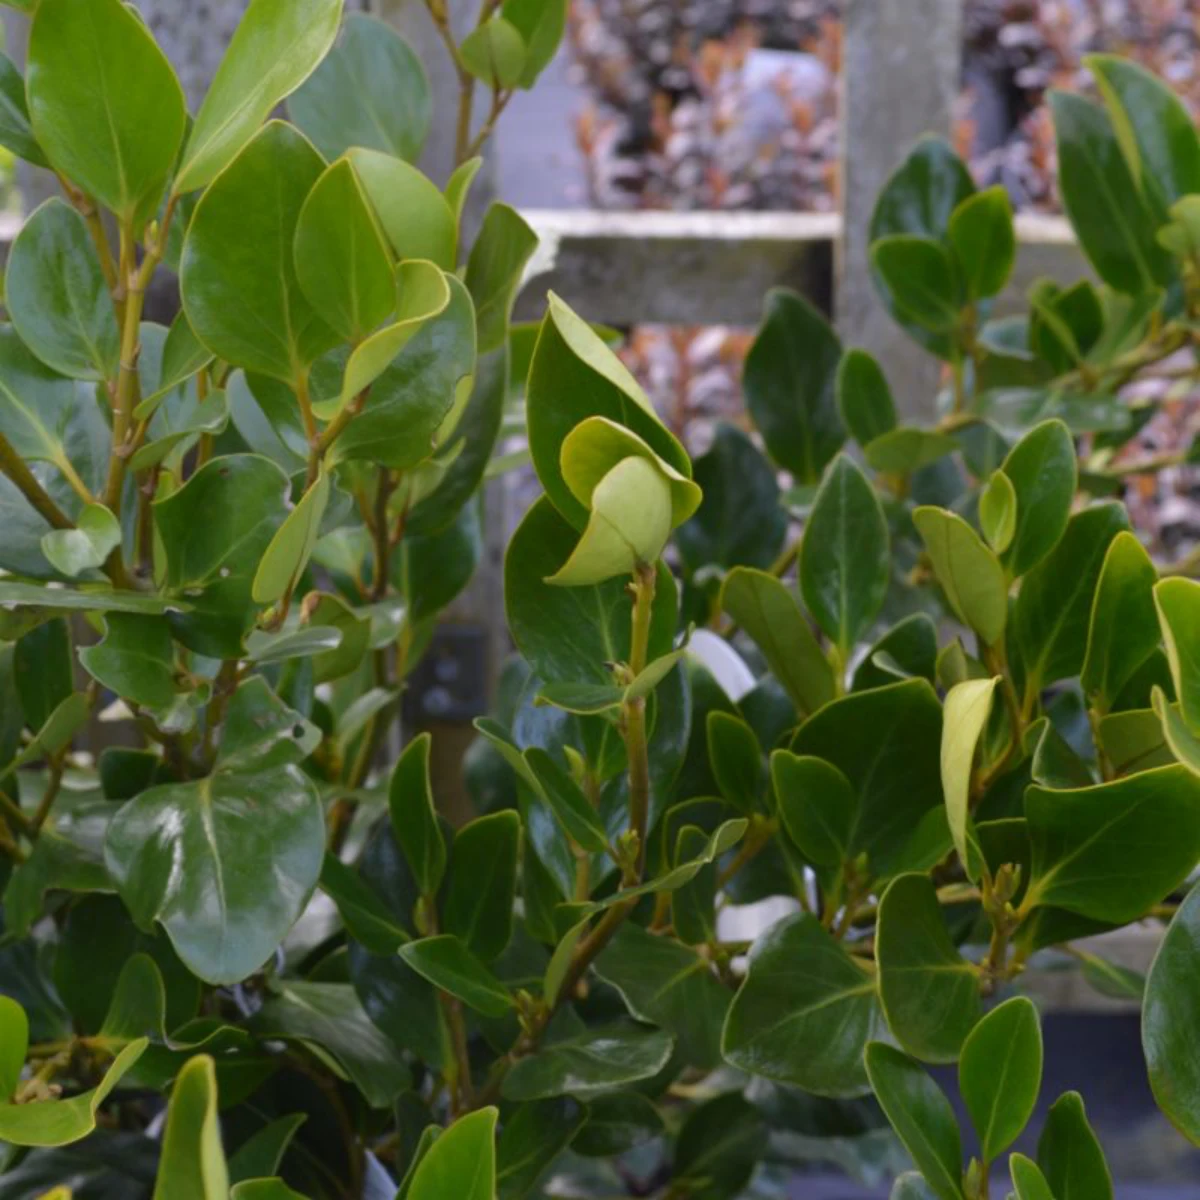 griselinia feuilles vertes plante brise vue